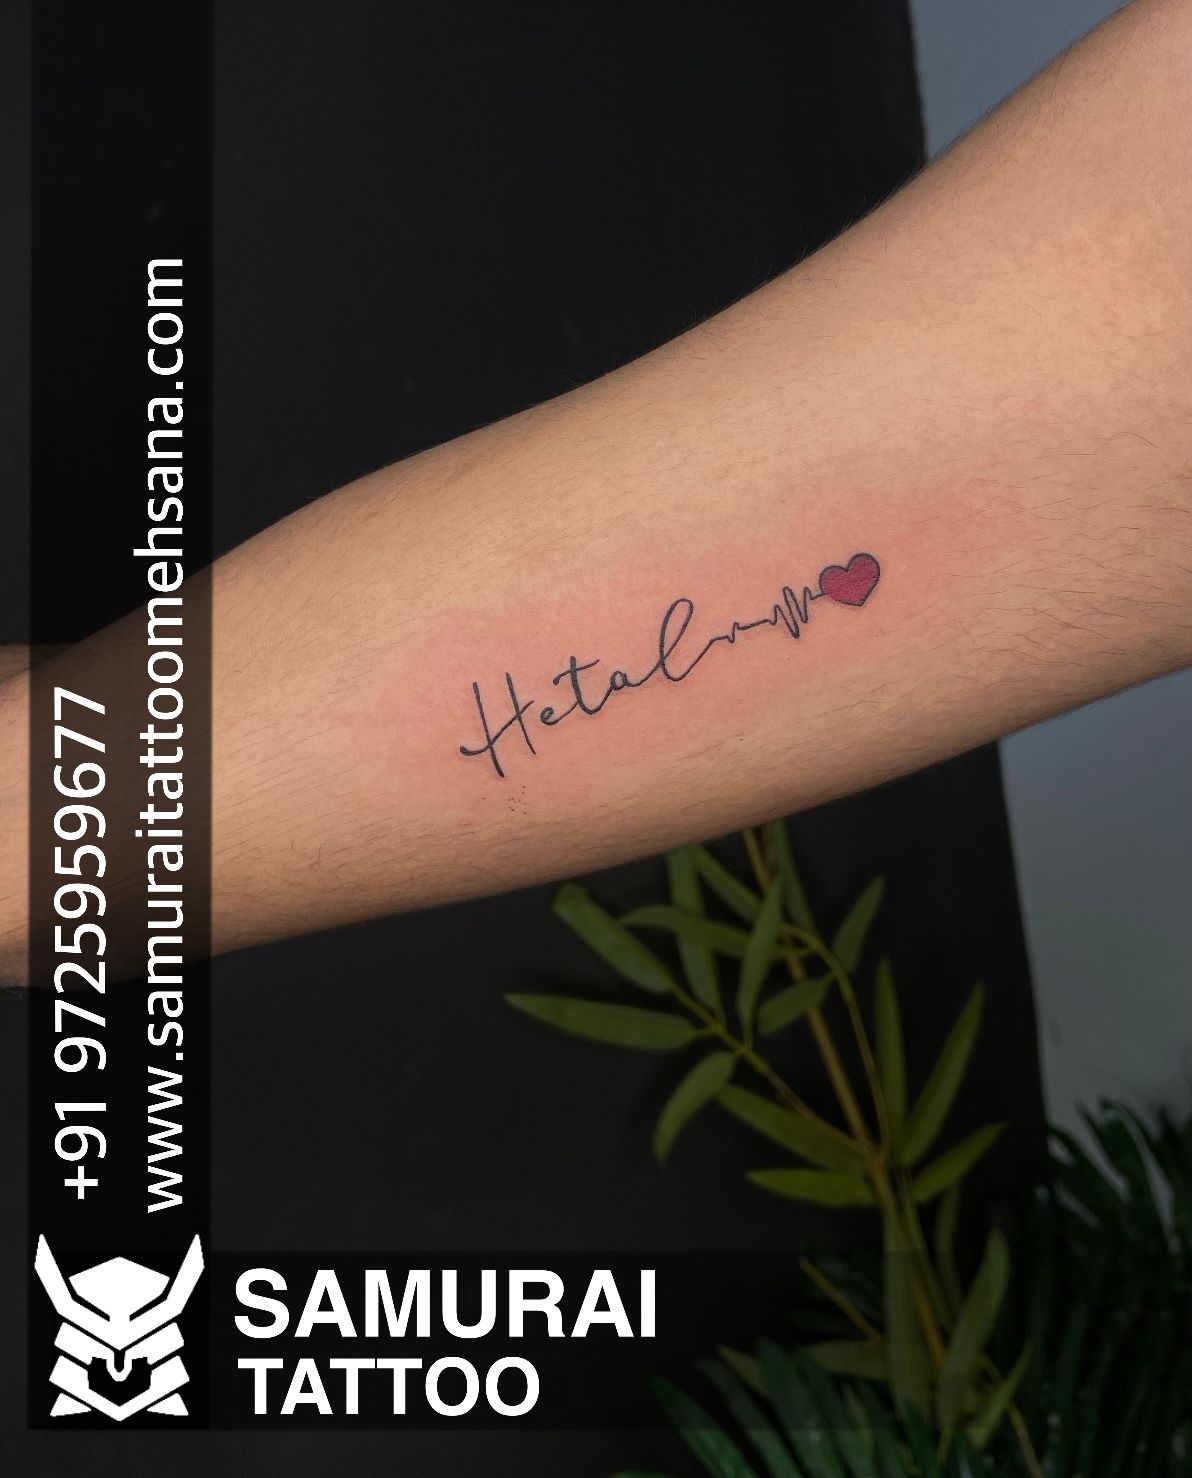 samurai tattoo mehsana on Twitter hitesh name tattoo  Hitesh name tattoo  design  Hitesh tattoo httpstcoeBb9FZZu4g  X